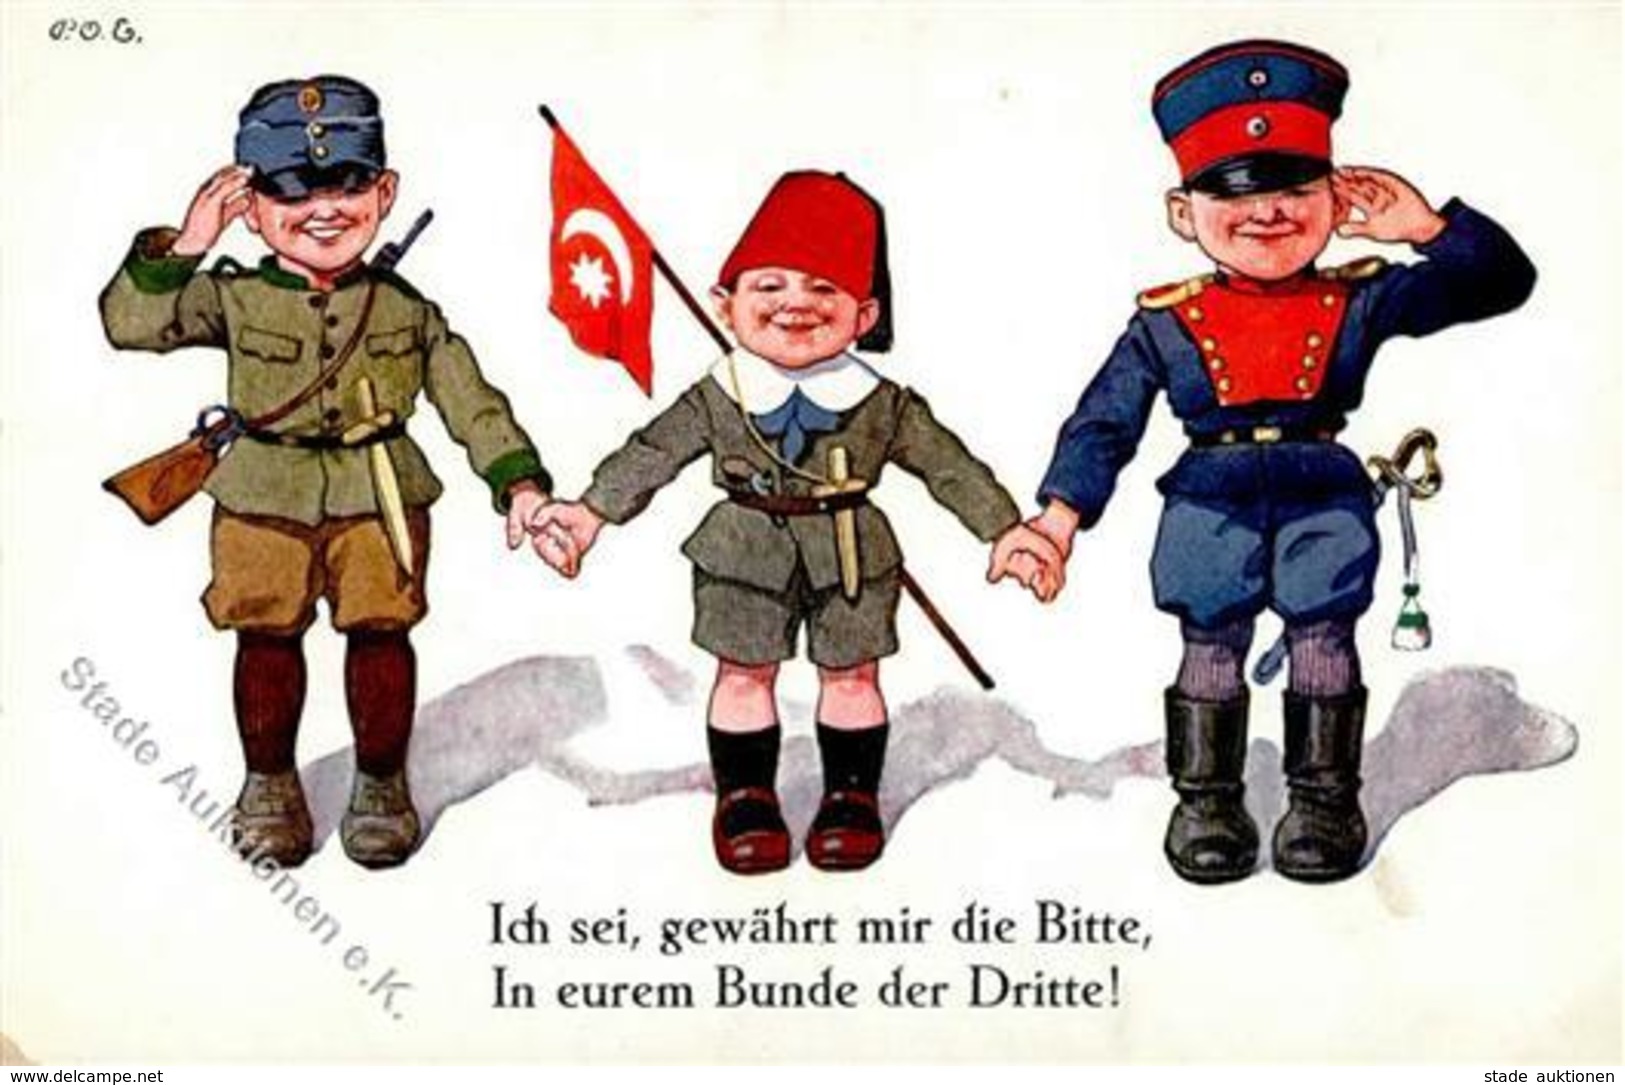 DEUTSCHLAND-TÜRKEI - 3er-BUND Kriegspostkarte 39 I-II - Guerre 1914-18